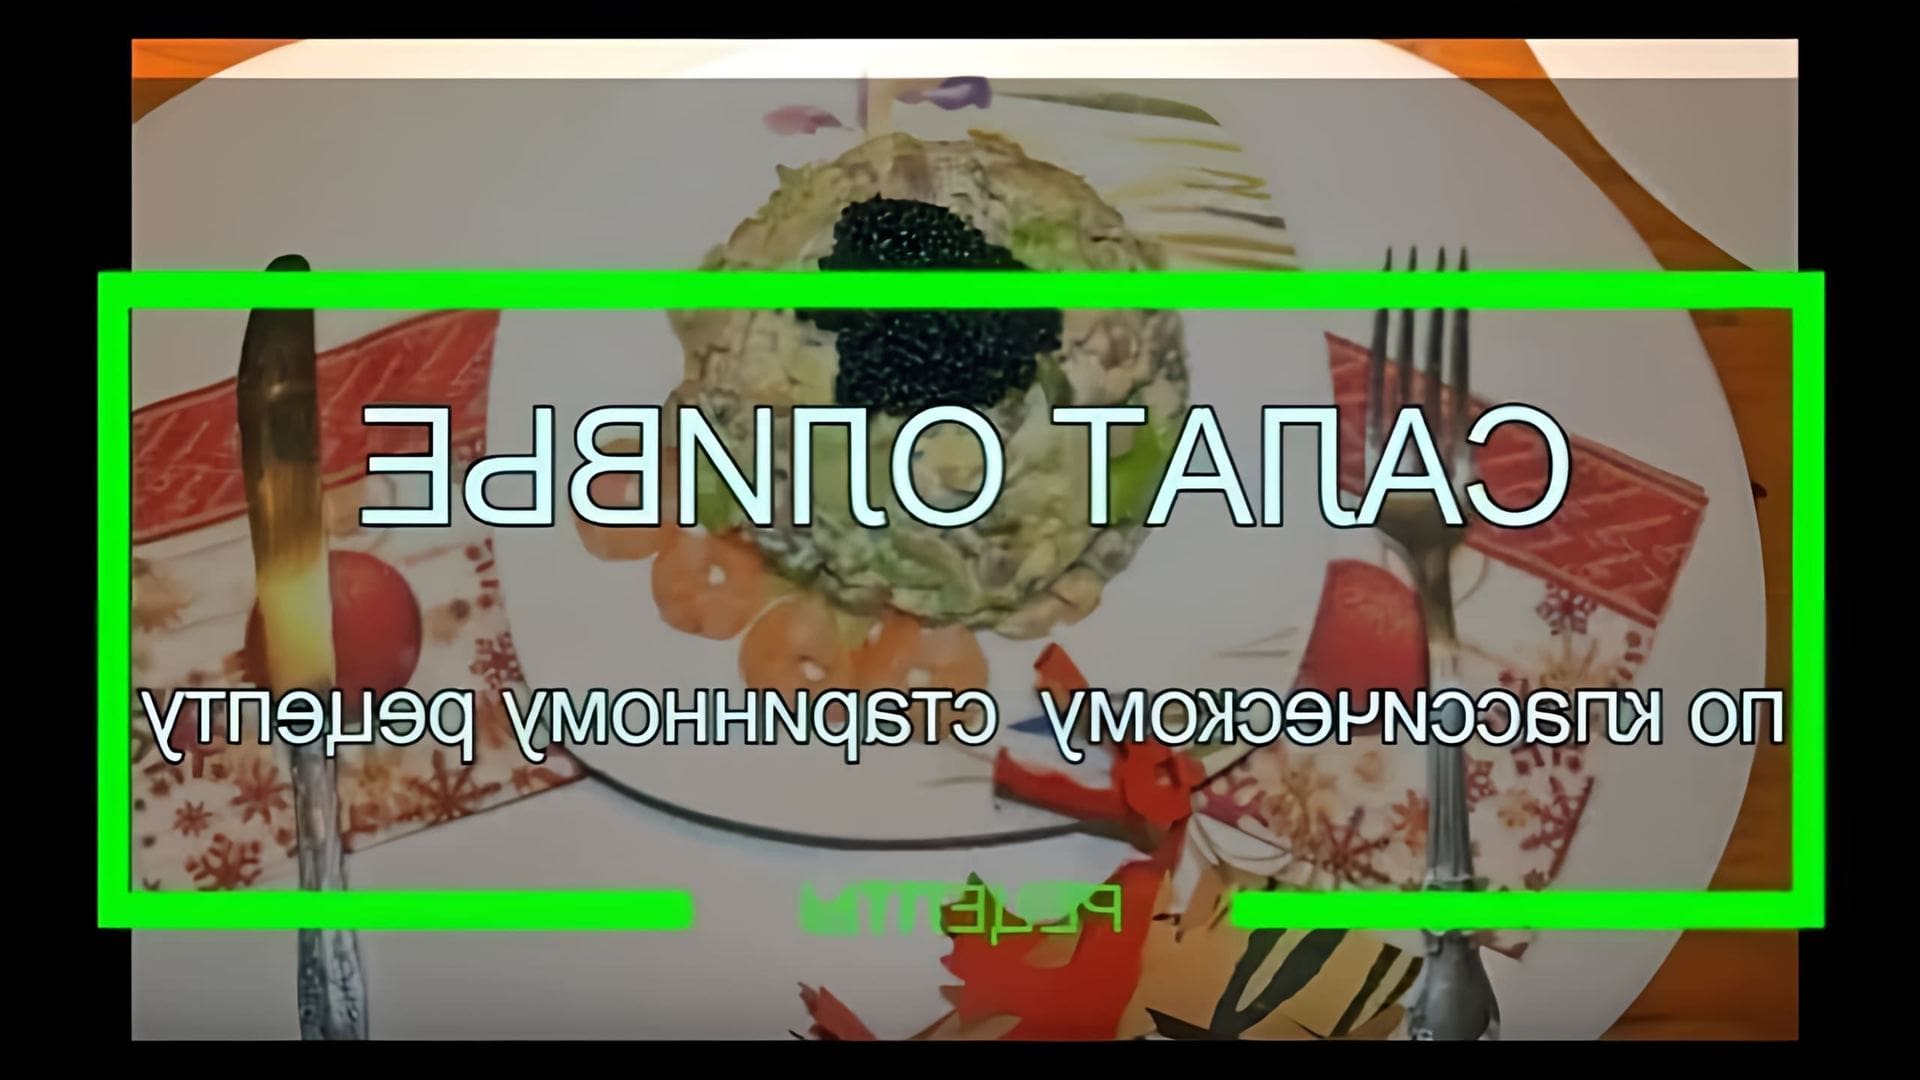 Салат Оливье рецепт классический старинный настоящий

В этом видео-ролике будет представлен рецепт приготовления классического салата Оливье, который является одним из самых популярных и любимых блюд в России